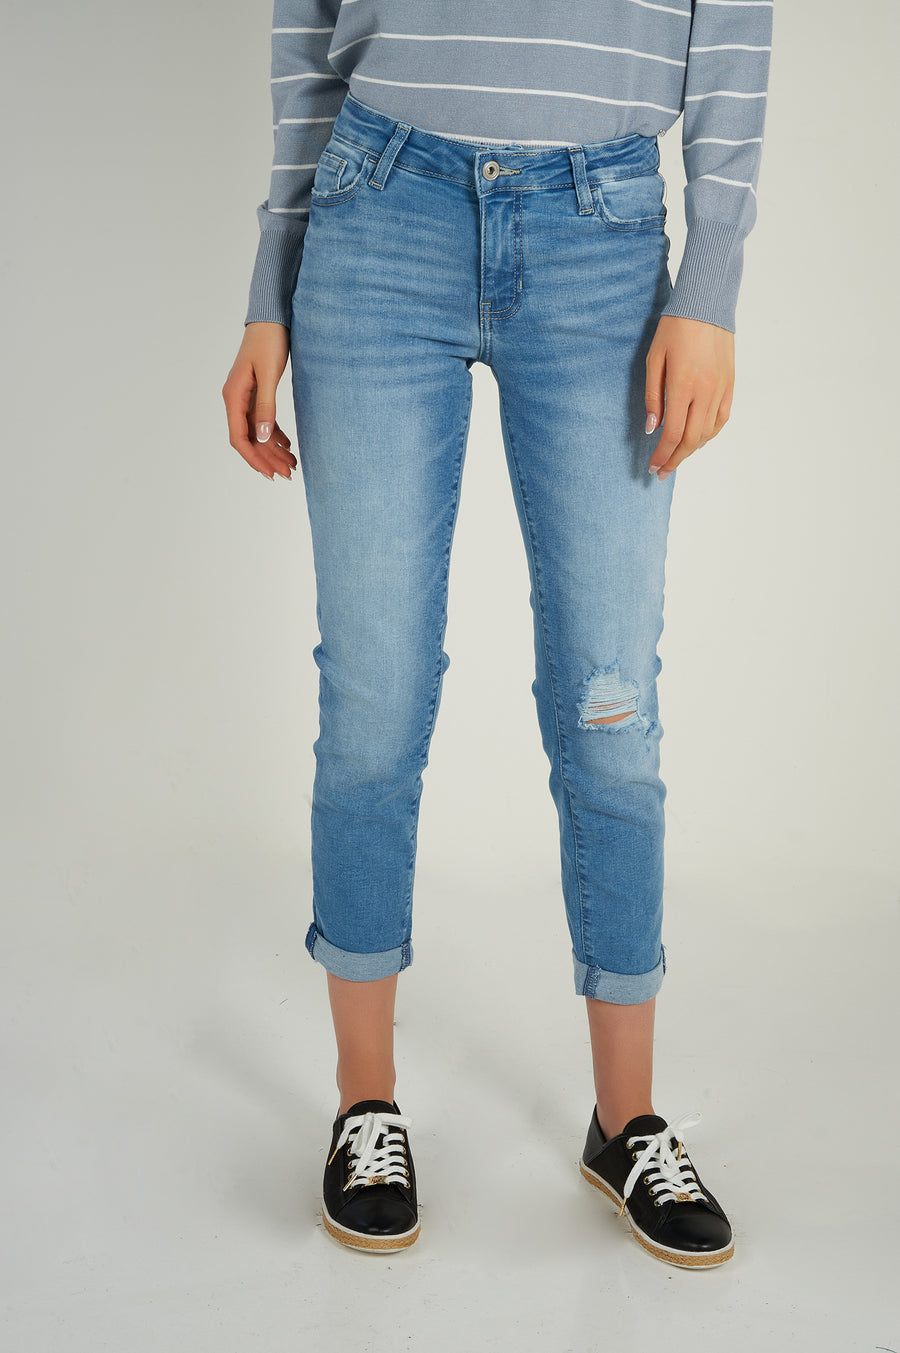 magasinez les jeans pour femmes de chez colori - Shop the jeans from colori 